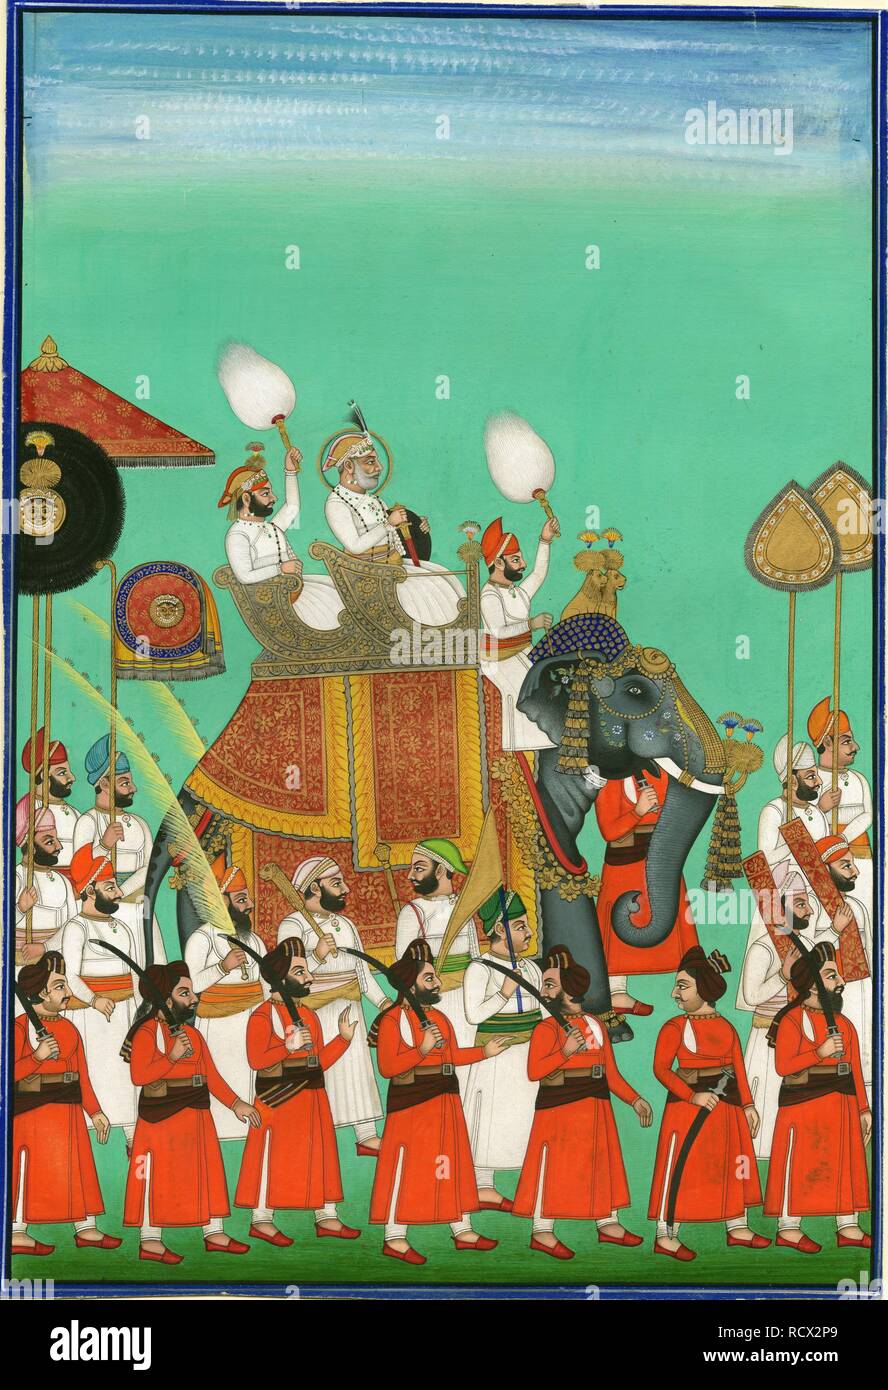 Rajá de Jodhpur montar en elefante. Museo: Colección privada. Autor: arte indio. Foto de stock